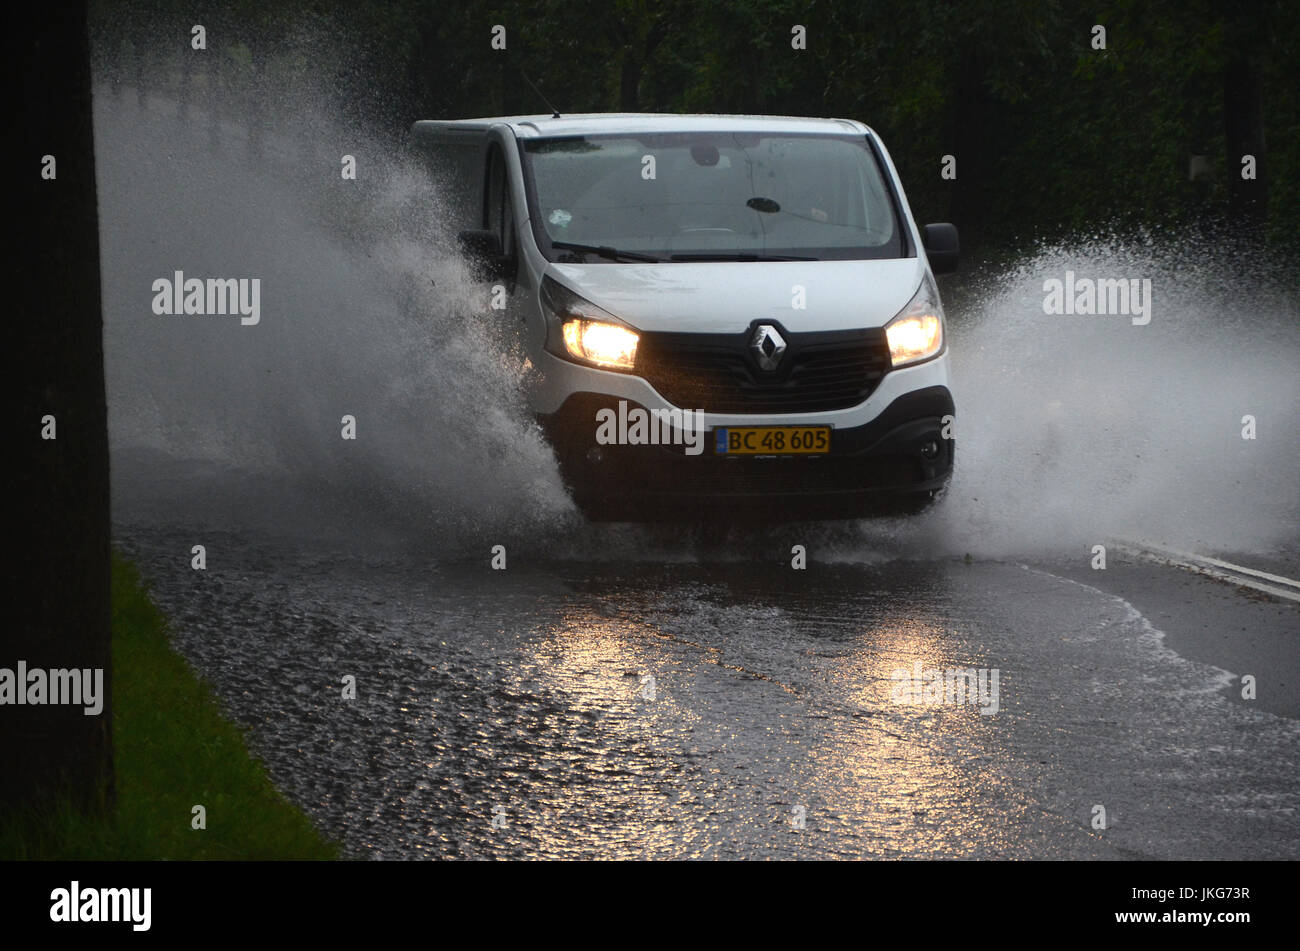 Sonderborg, Danemark - Juillet 23, 2017 : l'eau creux éclaboussures Van sur une route partiellement inondé pendant une forte pluie. Banque D'Images